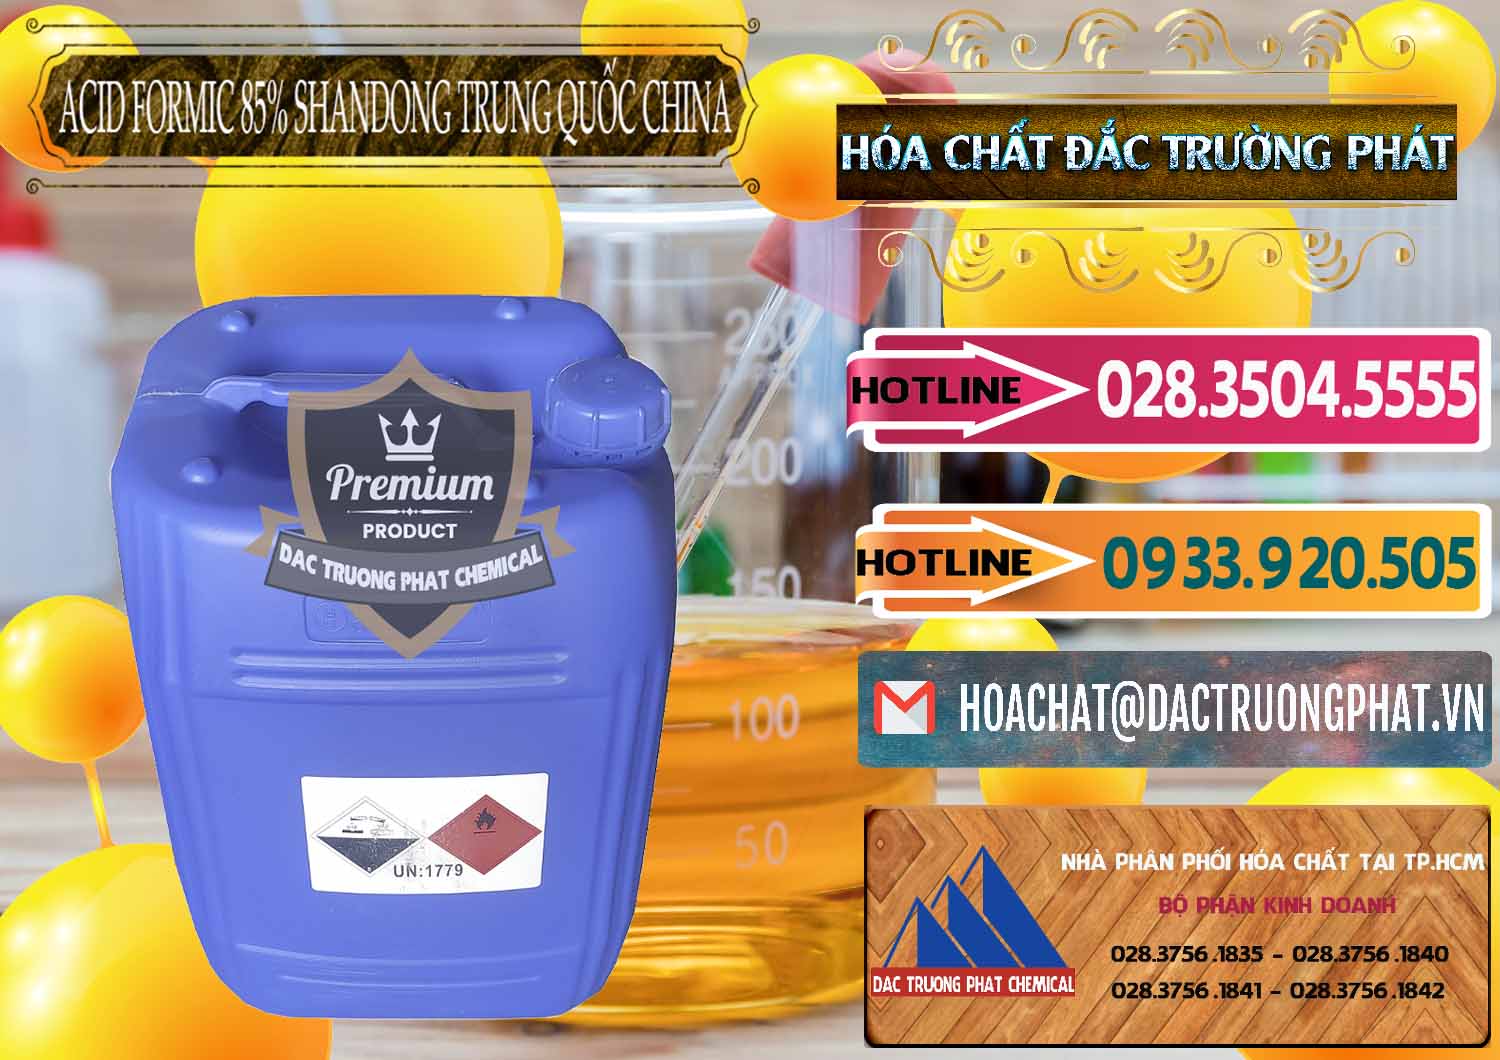 Nơi chuyên cung cấp _ bán Acid Formic - Axit Formic 85% Shandong Trung Quốc China - 0235 - Đơn vị chuyên cung cấp & kinh doanh hóa chất tại TP.HCM - dactruongphat.vn